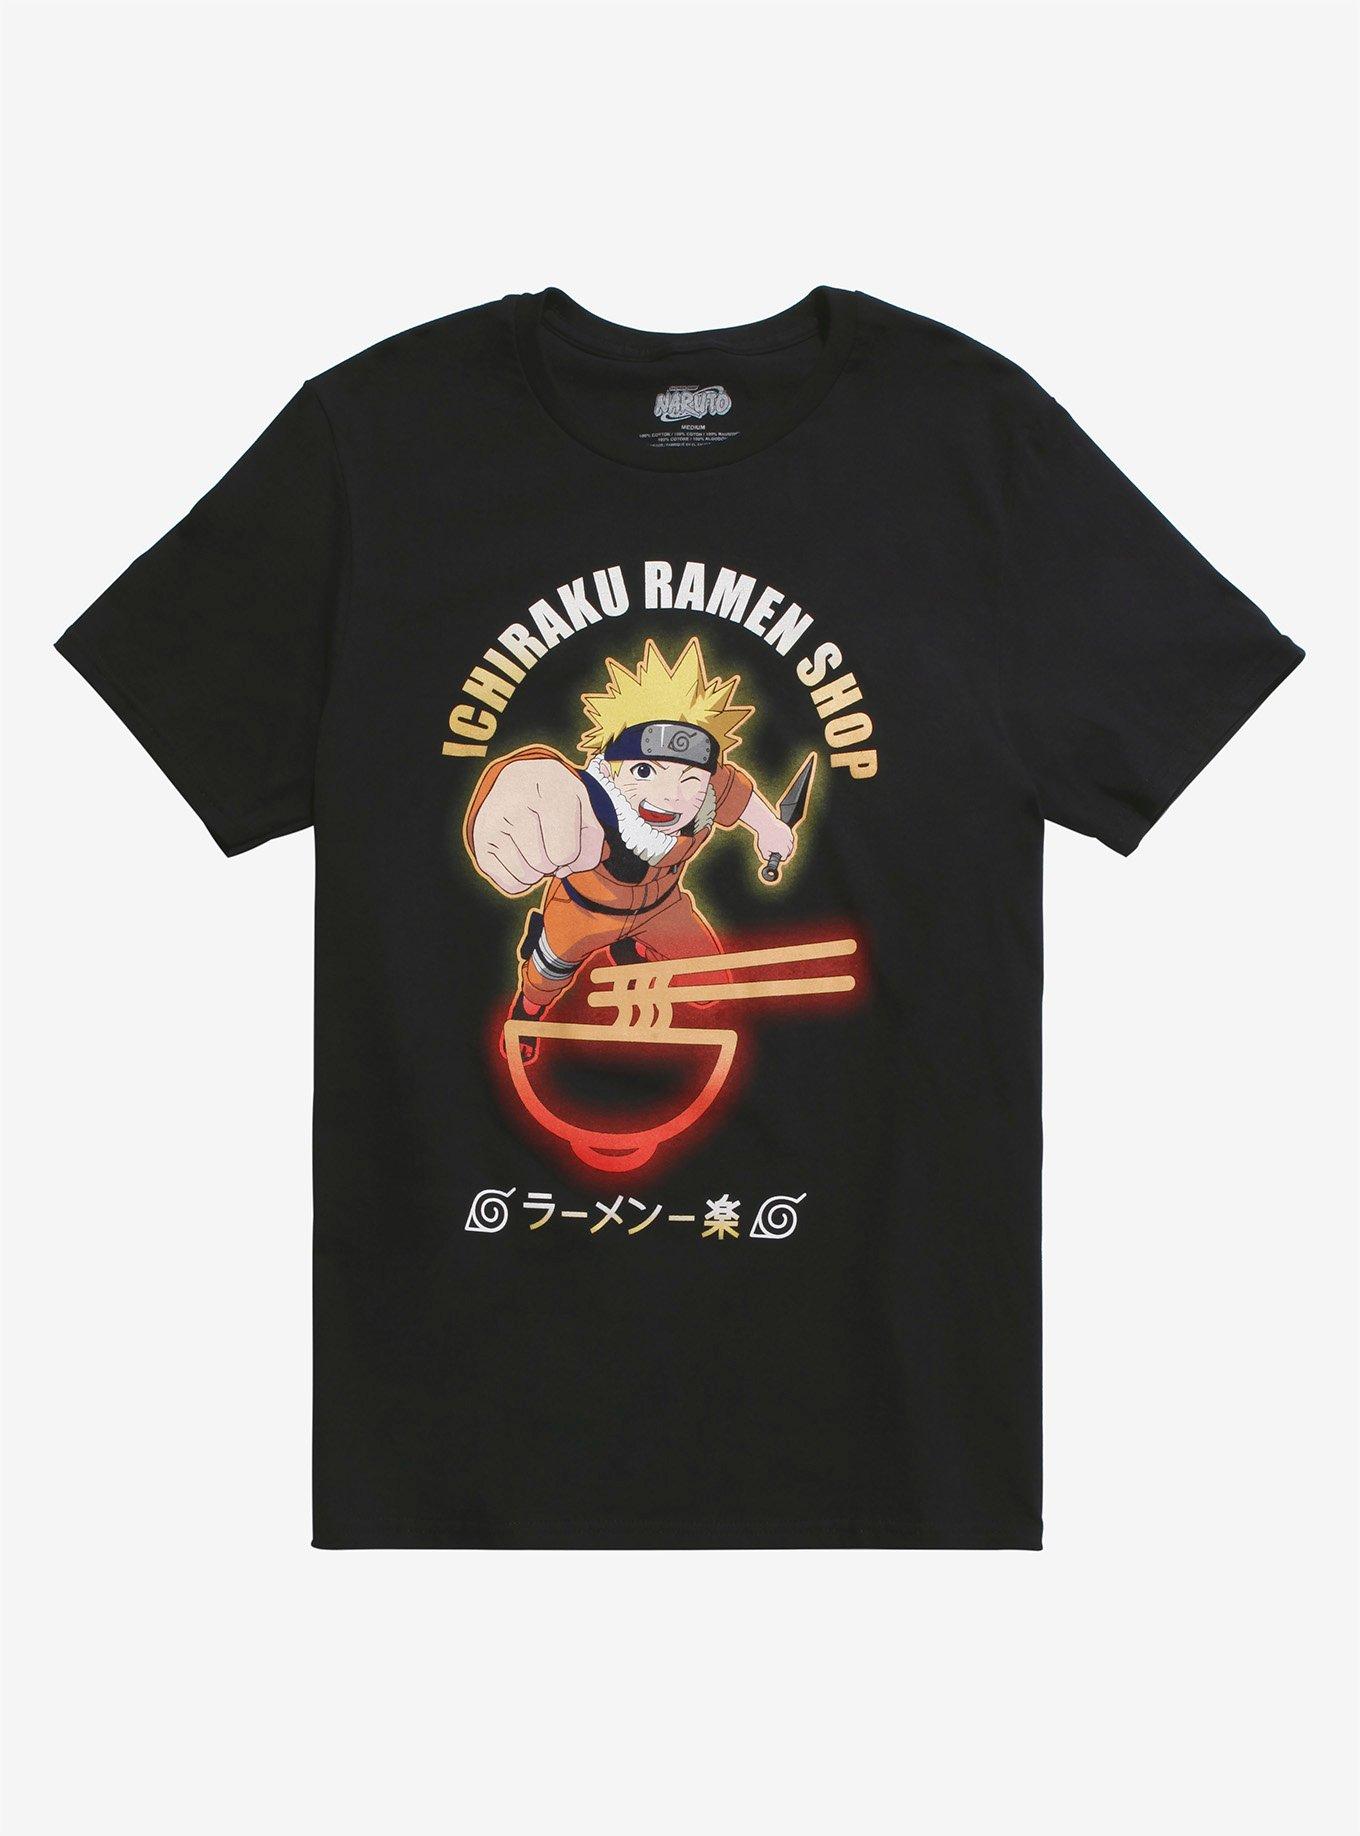 Naruto Shippuden Ichiraku Ramen Shop T-Shirt | Hot Topic